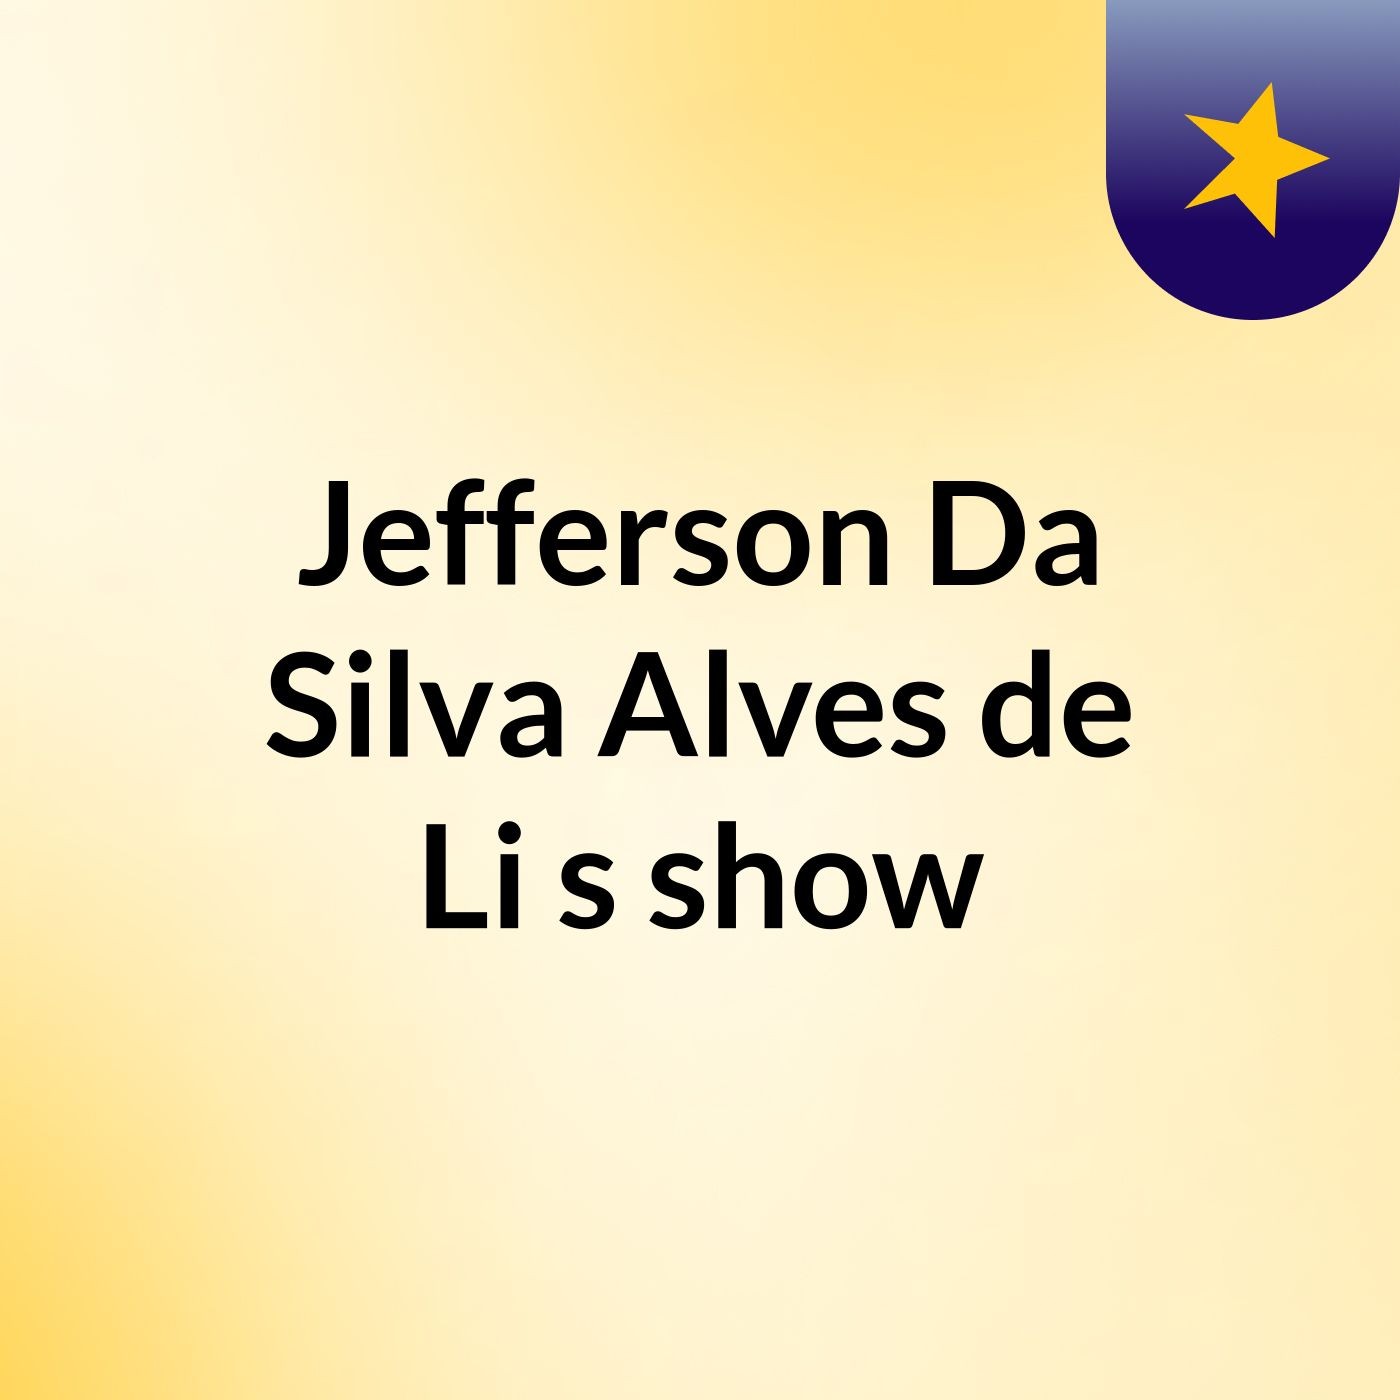 Jefferson Da Silva Alves de Li's show